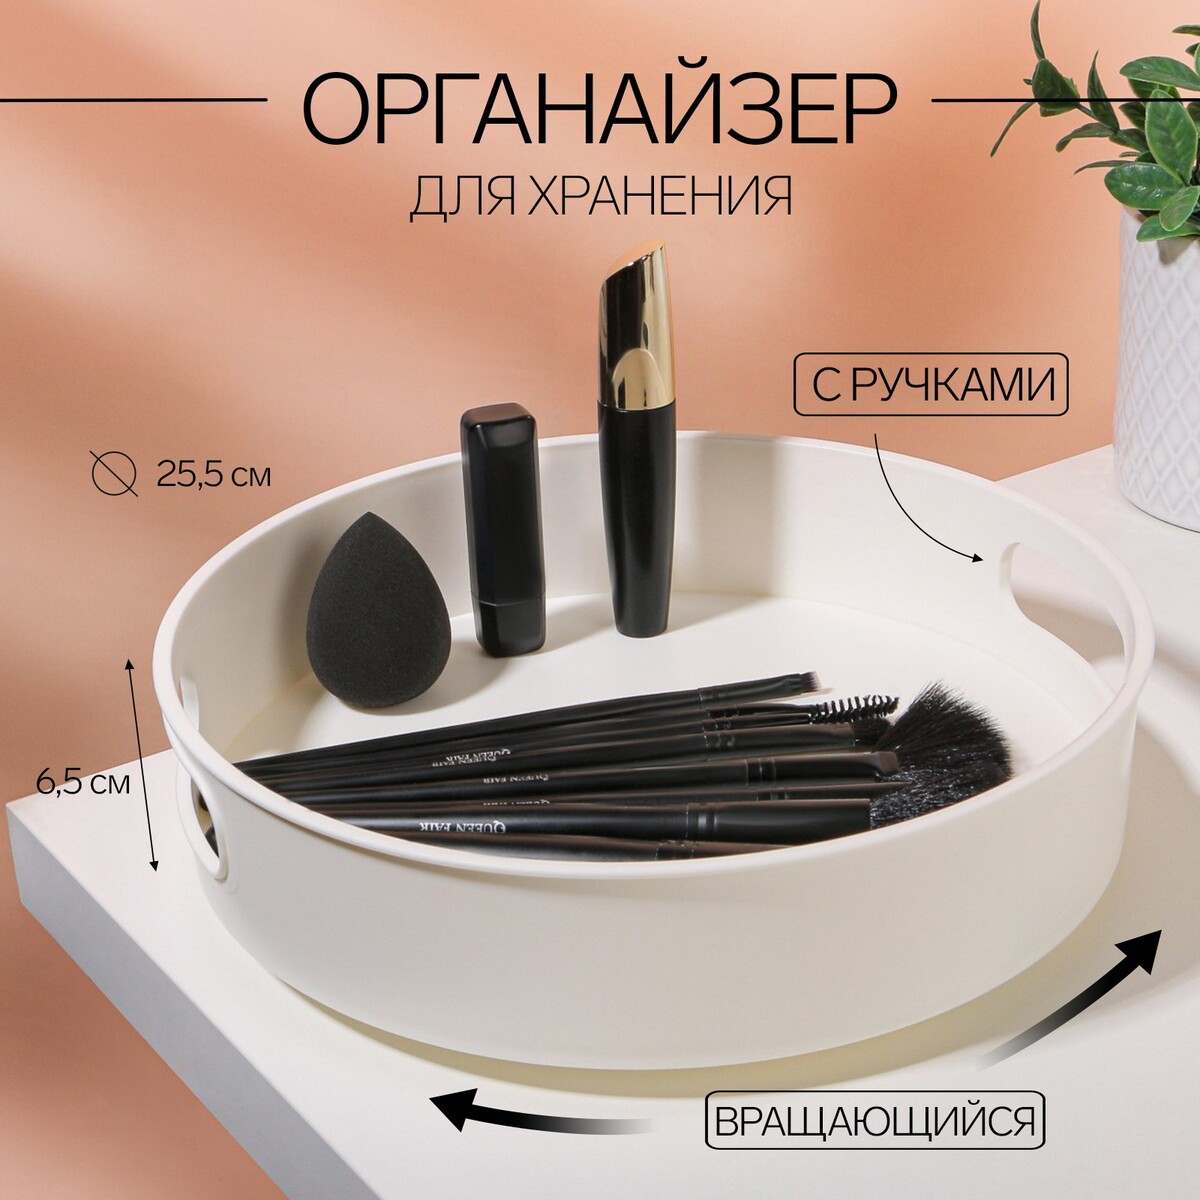 Органайзер для хранения, вращающийся, с ручками, 25,5 × 6,5 см, цвет белый подсвечник вращающийся